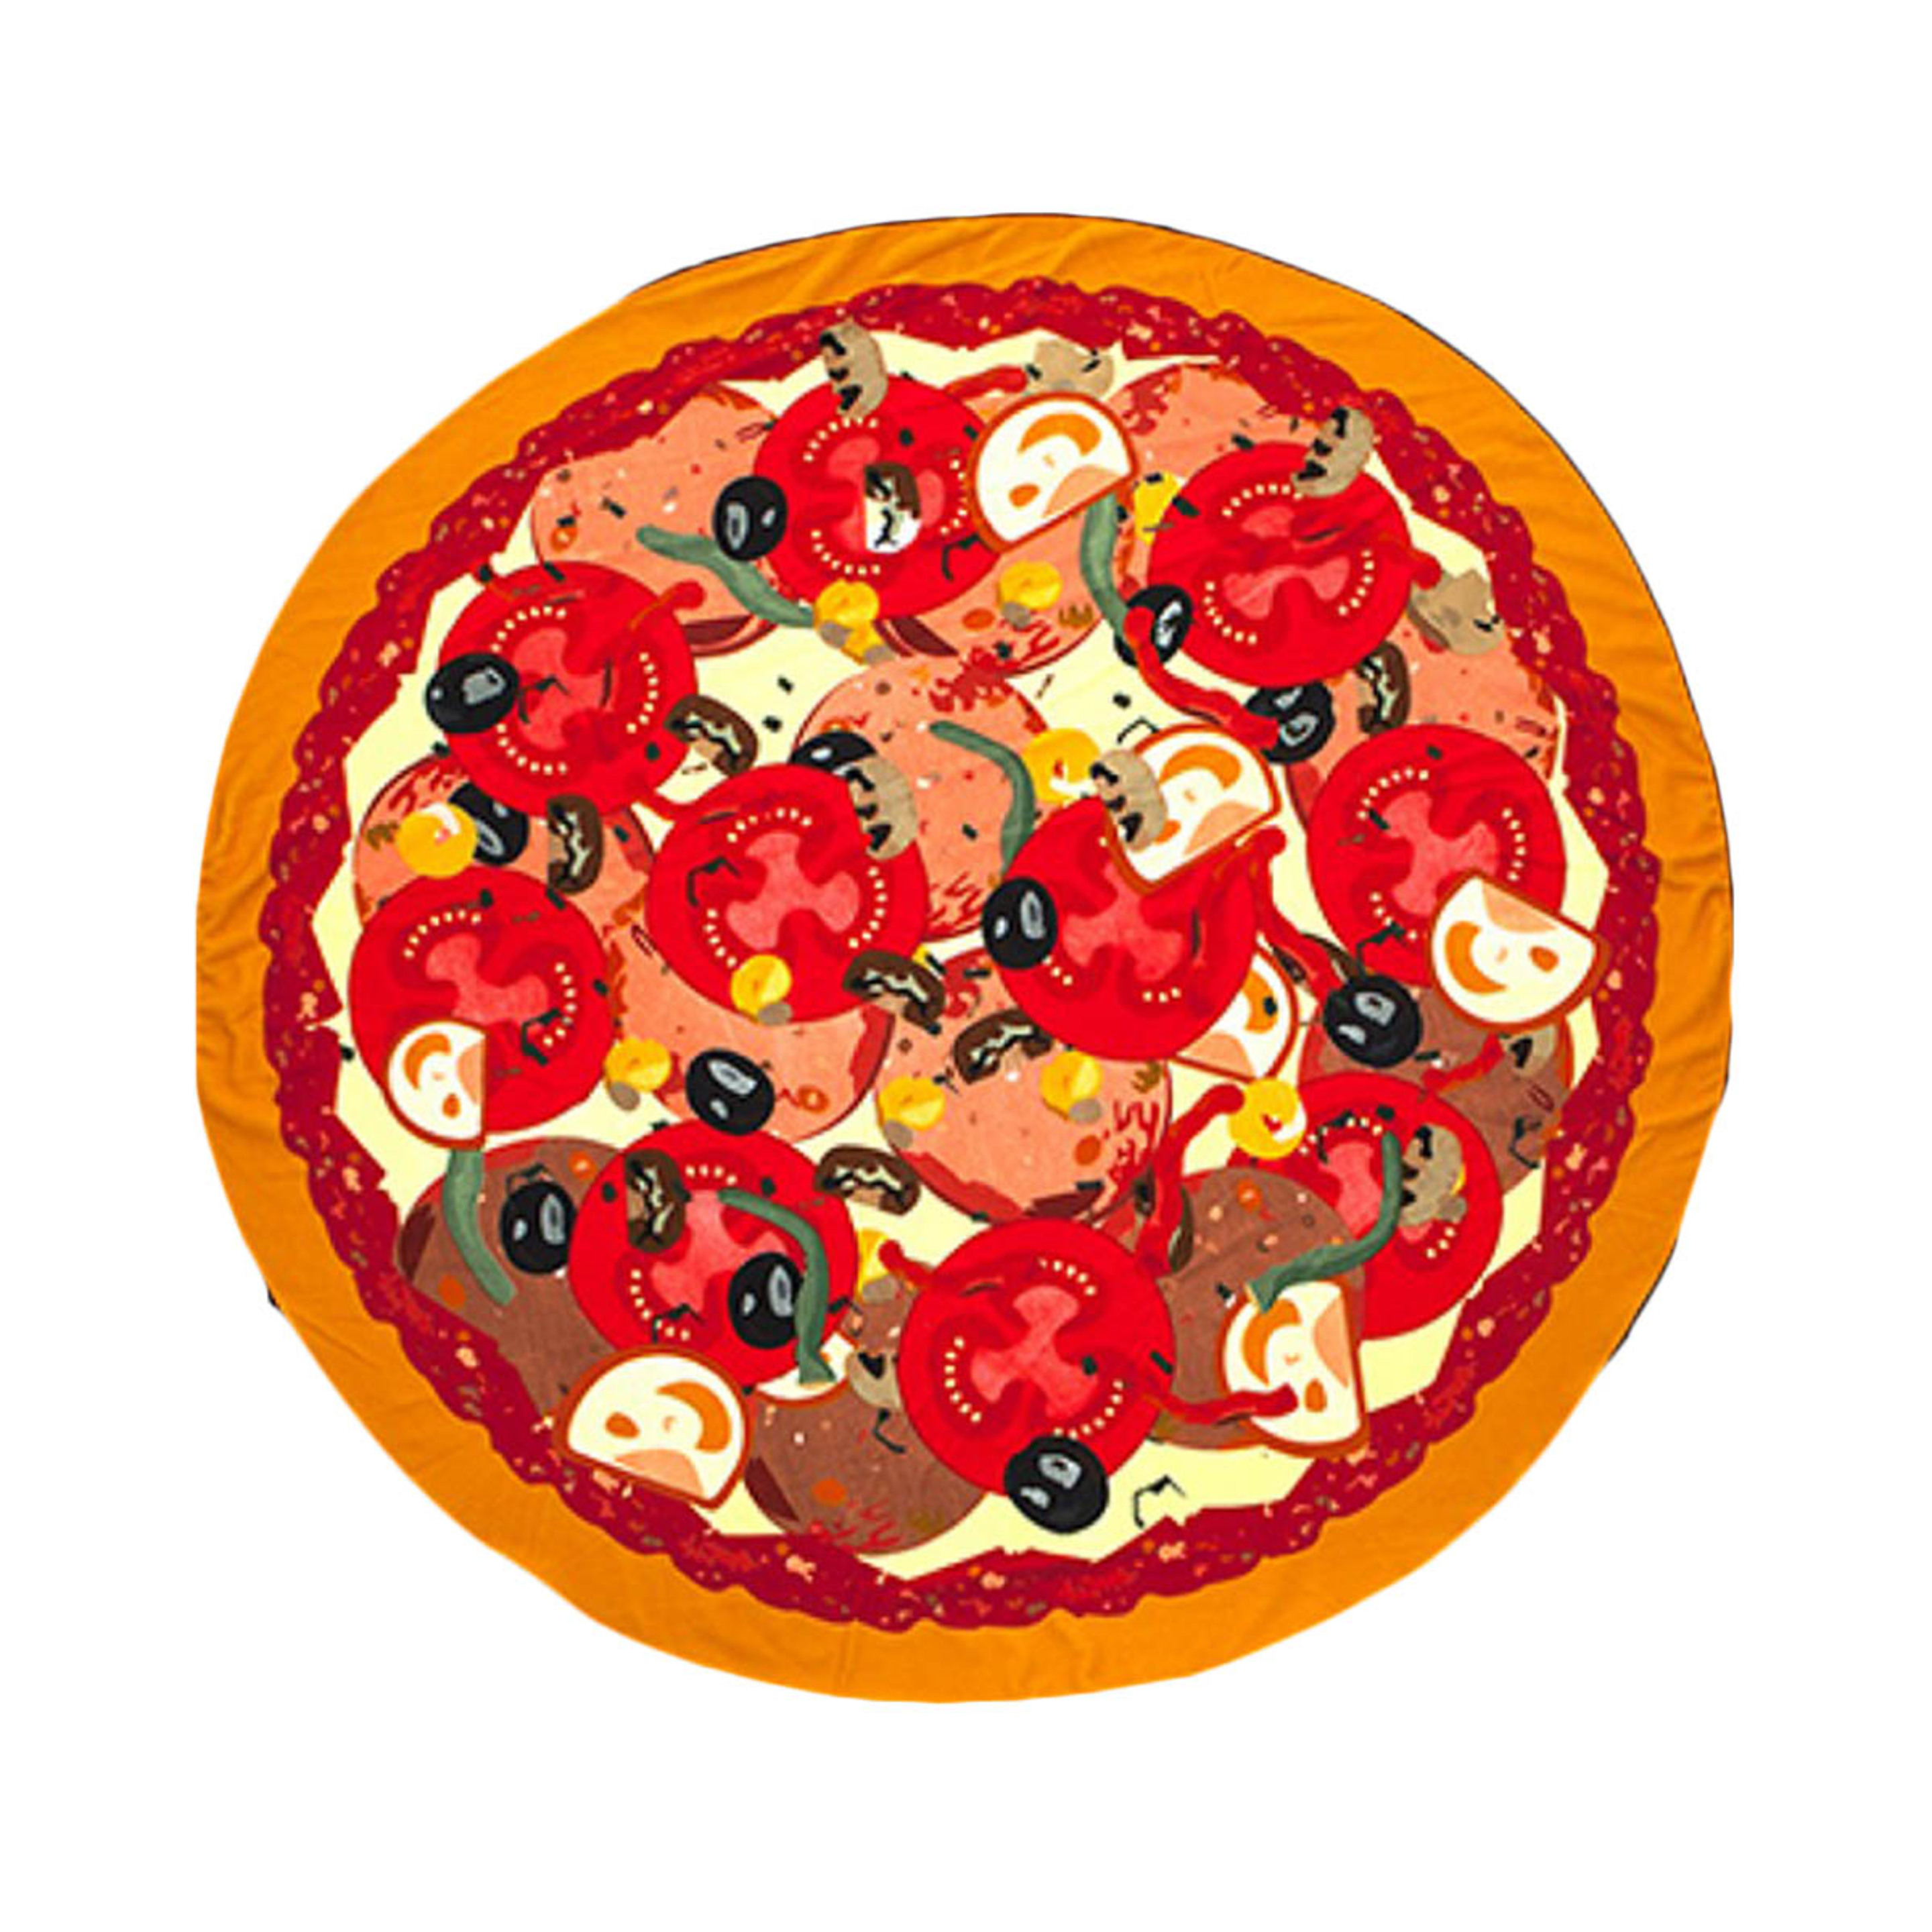 Toalla De Playa Con Forma De Pizza - Multicolor - Toalla De Playa Con Forma De Pizza  MKP